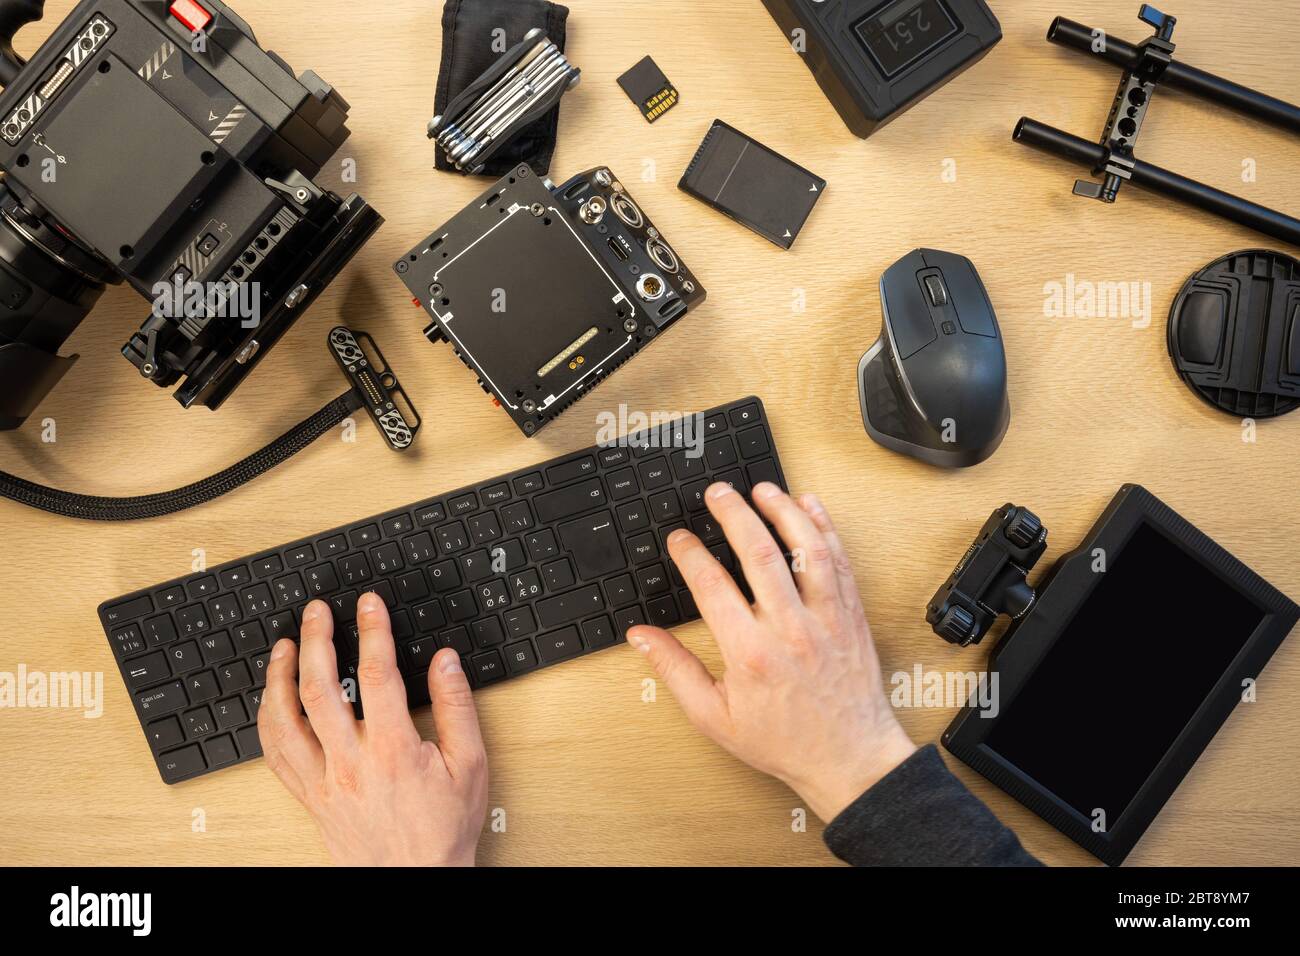 Die Hände wurden mit der Computertastatur durch verschiedene Geräte am Tisch abgeschnitten Stockfoto